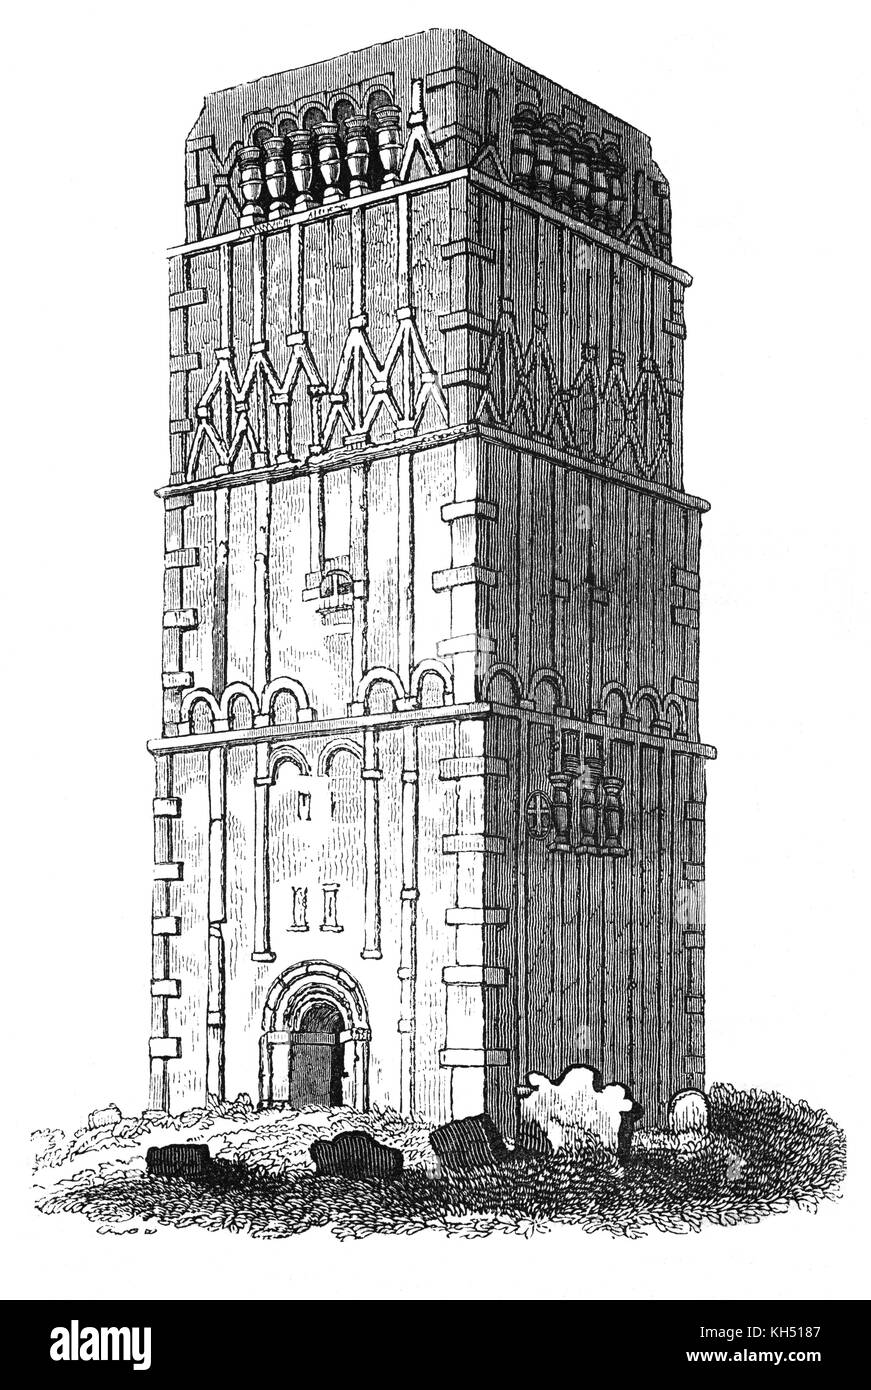 Das späte 10. Jahrhundert Turm am Earls Barton war wahrscheinlich ursprünglich ein Turm, Kirchenschiff, das Erdgeschoss als Hauptteil der Kirche mit einem kleinen Chor im Anhang zu dieser Akte, die in den Osten. Der Eingang an der Westseite des Turms, erlaubt den Zugriff auf die Außenseite. Die oberen Etagen überlassene Unterkunft für den Priester oder Agierte als sicherer Hafen Schätze zu Haus, und es gibt ein Glockenturm auf dem obersten Stockwerk. Northamptonshire, England. Stockfoto